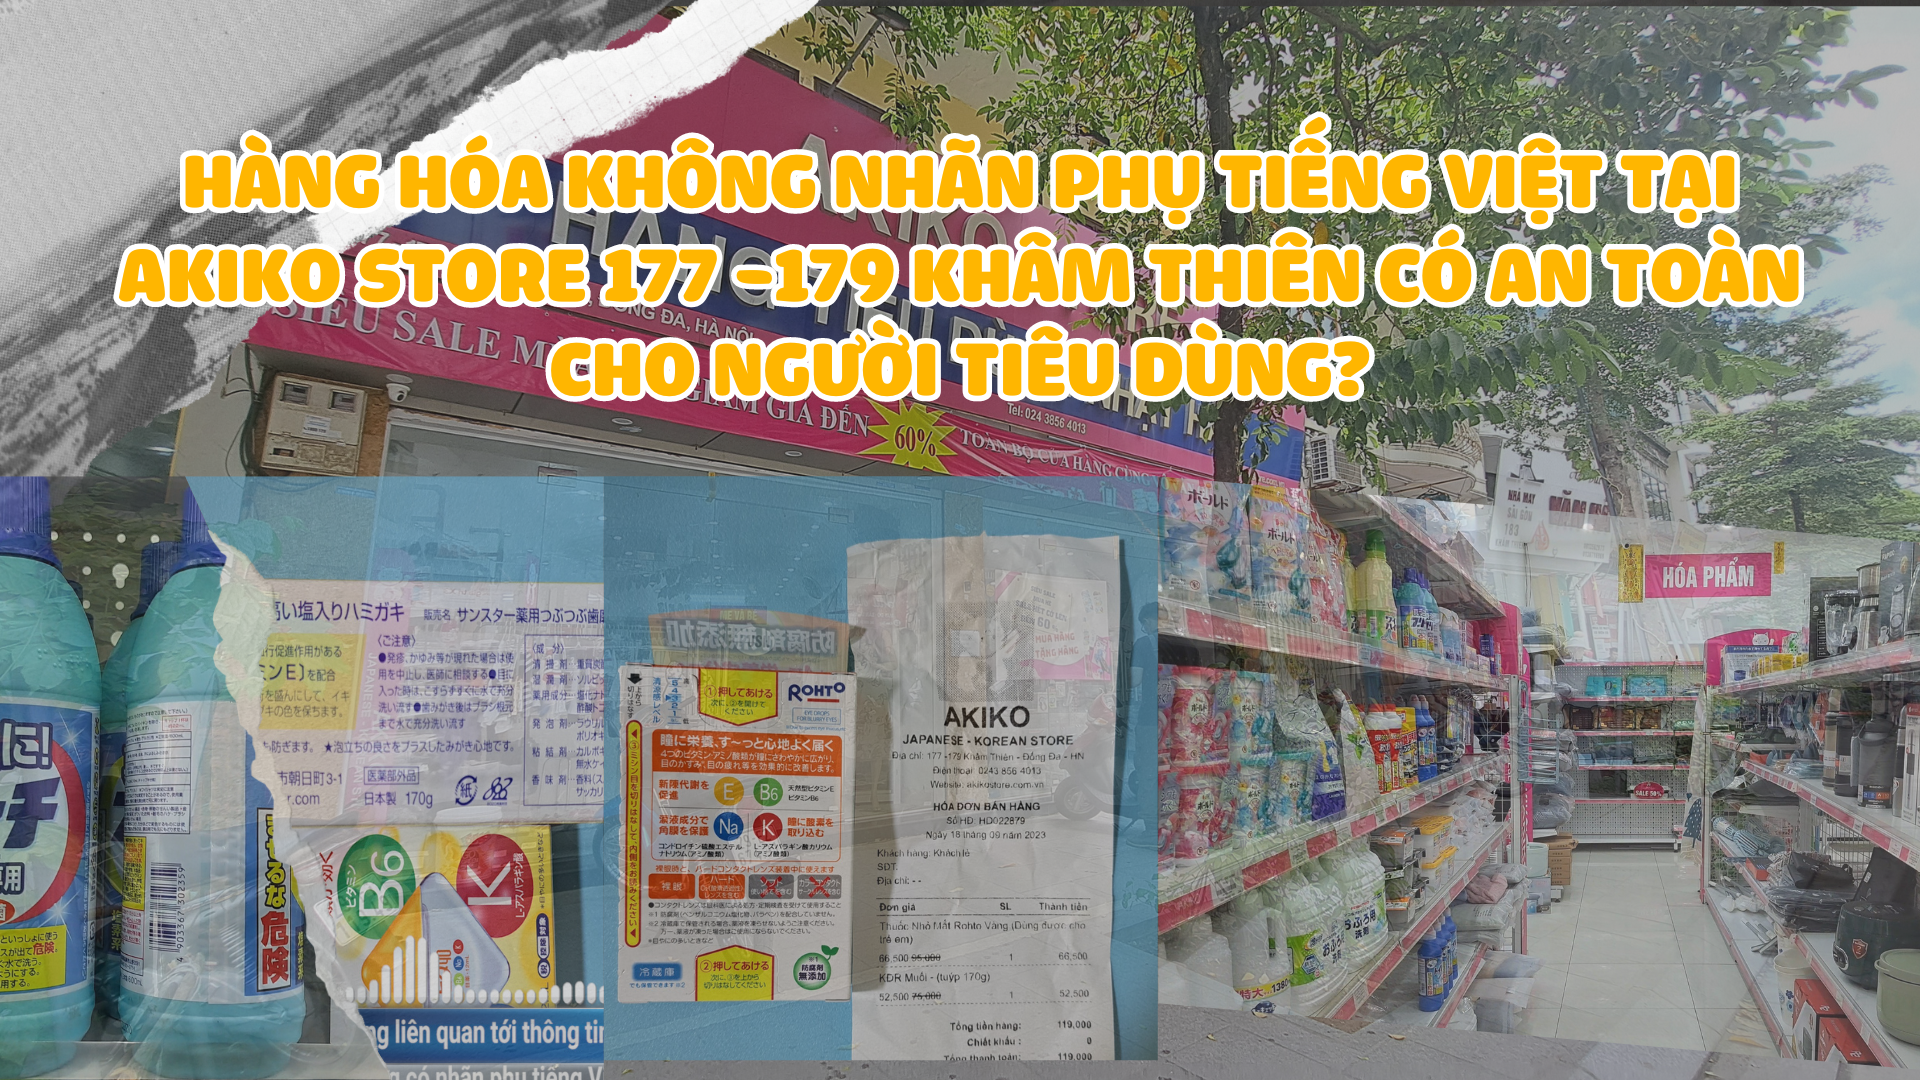 Hàng hóa không nhãn phụ tiếng Việt tại Akiko Store  177 -179 Khâm Thiên  có an toàn cho người tiêu dùng?